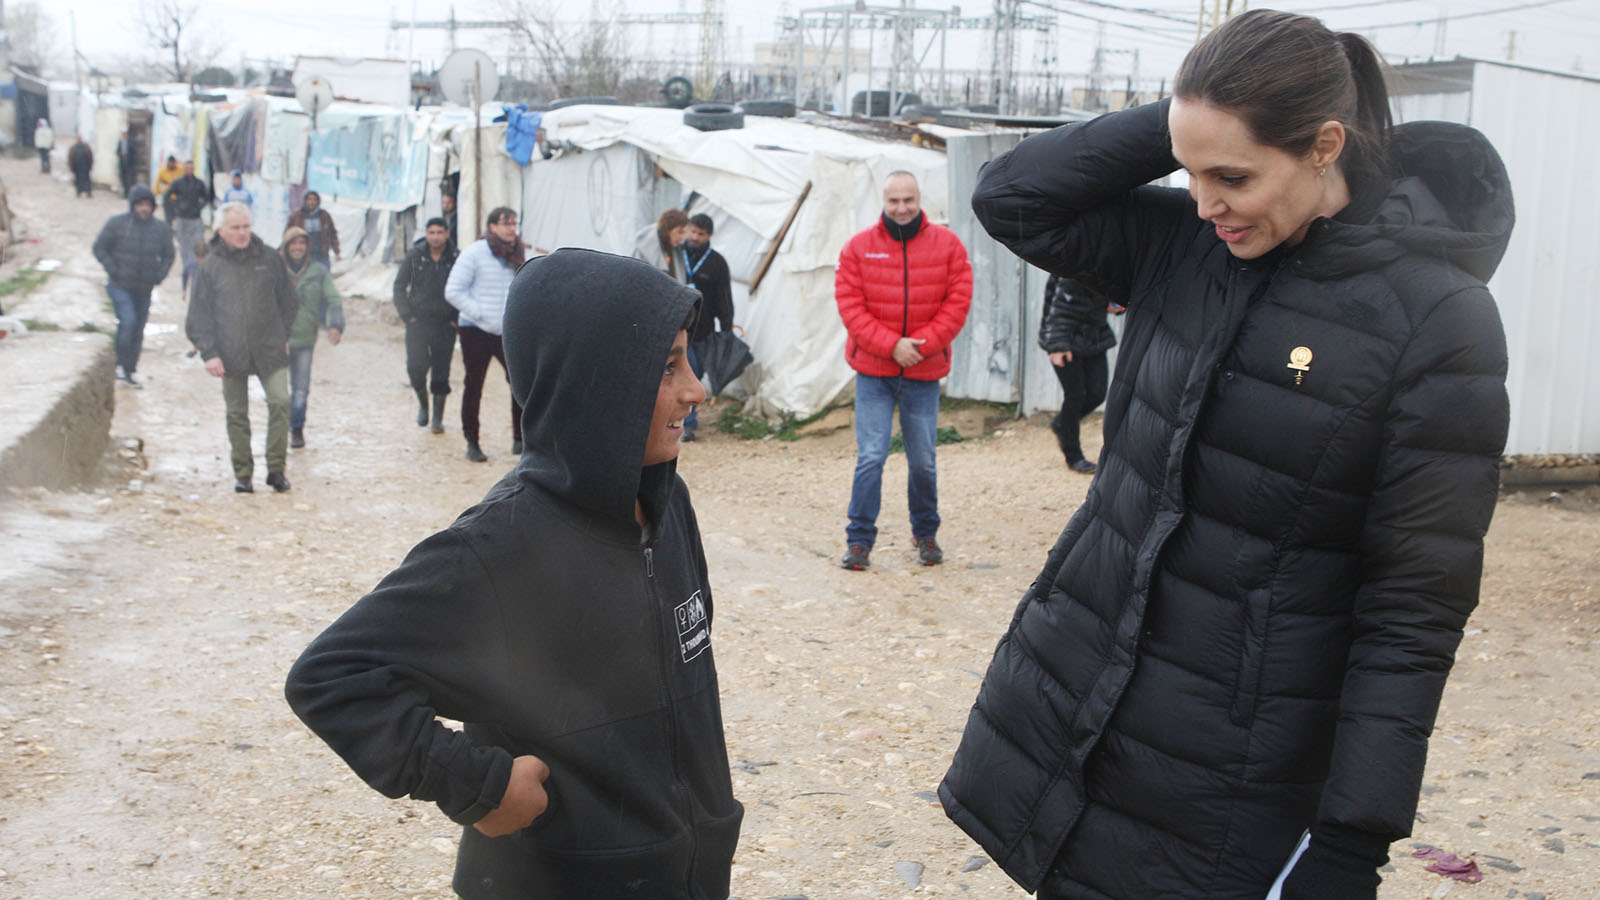 انجلينا جولي في مخيمات البقاع: اللاجئون أبطال